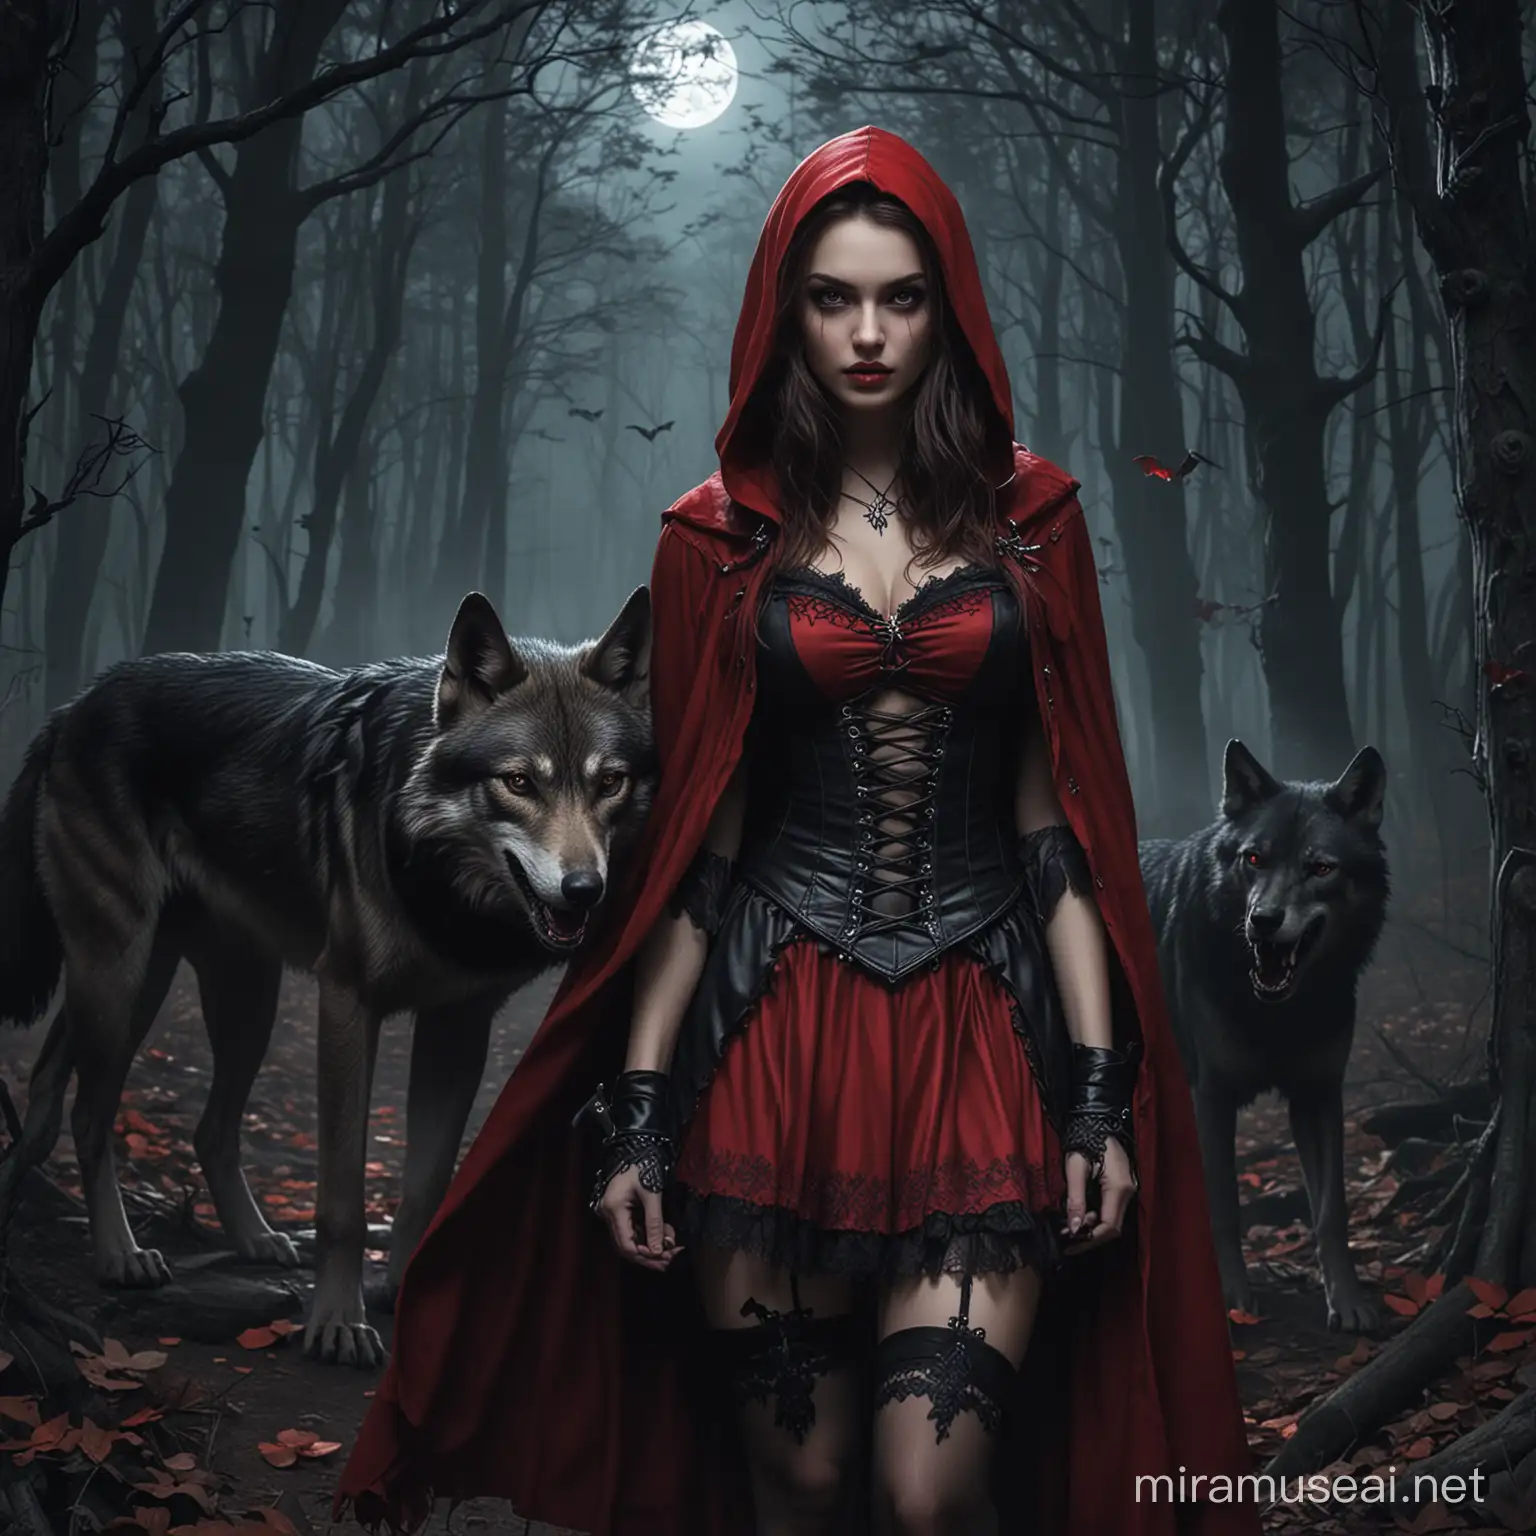 Gothic dark. Cappuccetto Rosso  è sexy. Si trova in un bosco di notte, c'è un lupo,  ci sono teschi e pipistrelli.